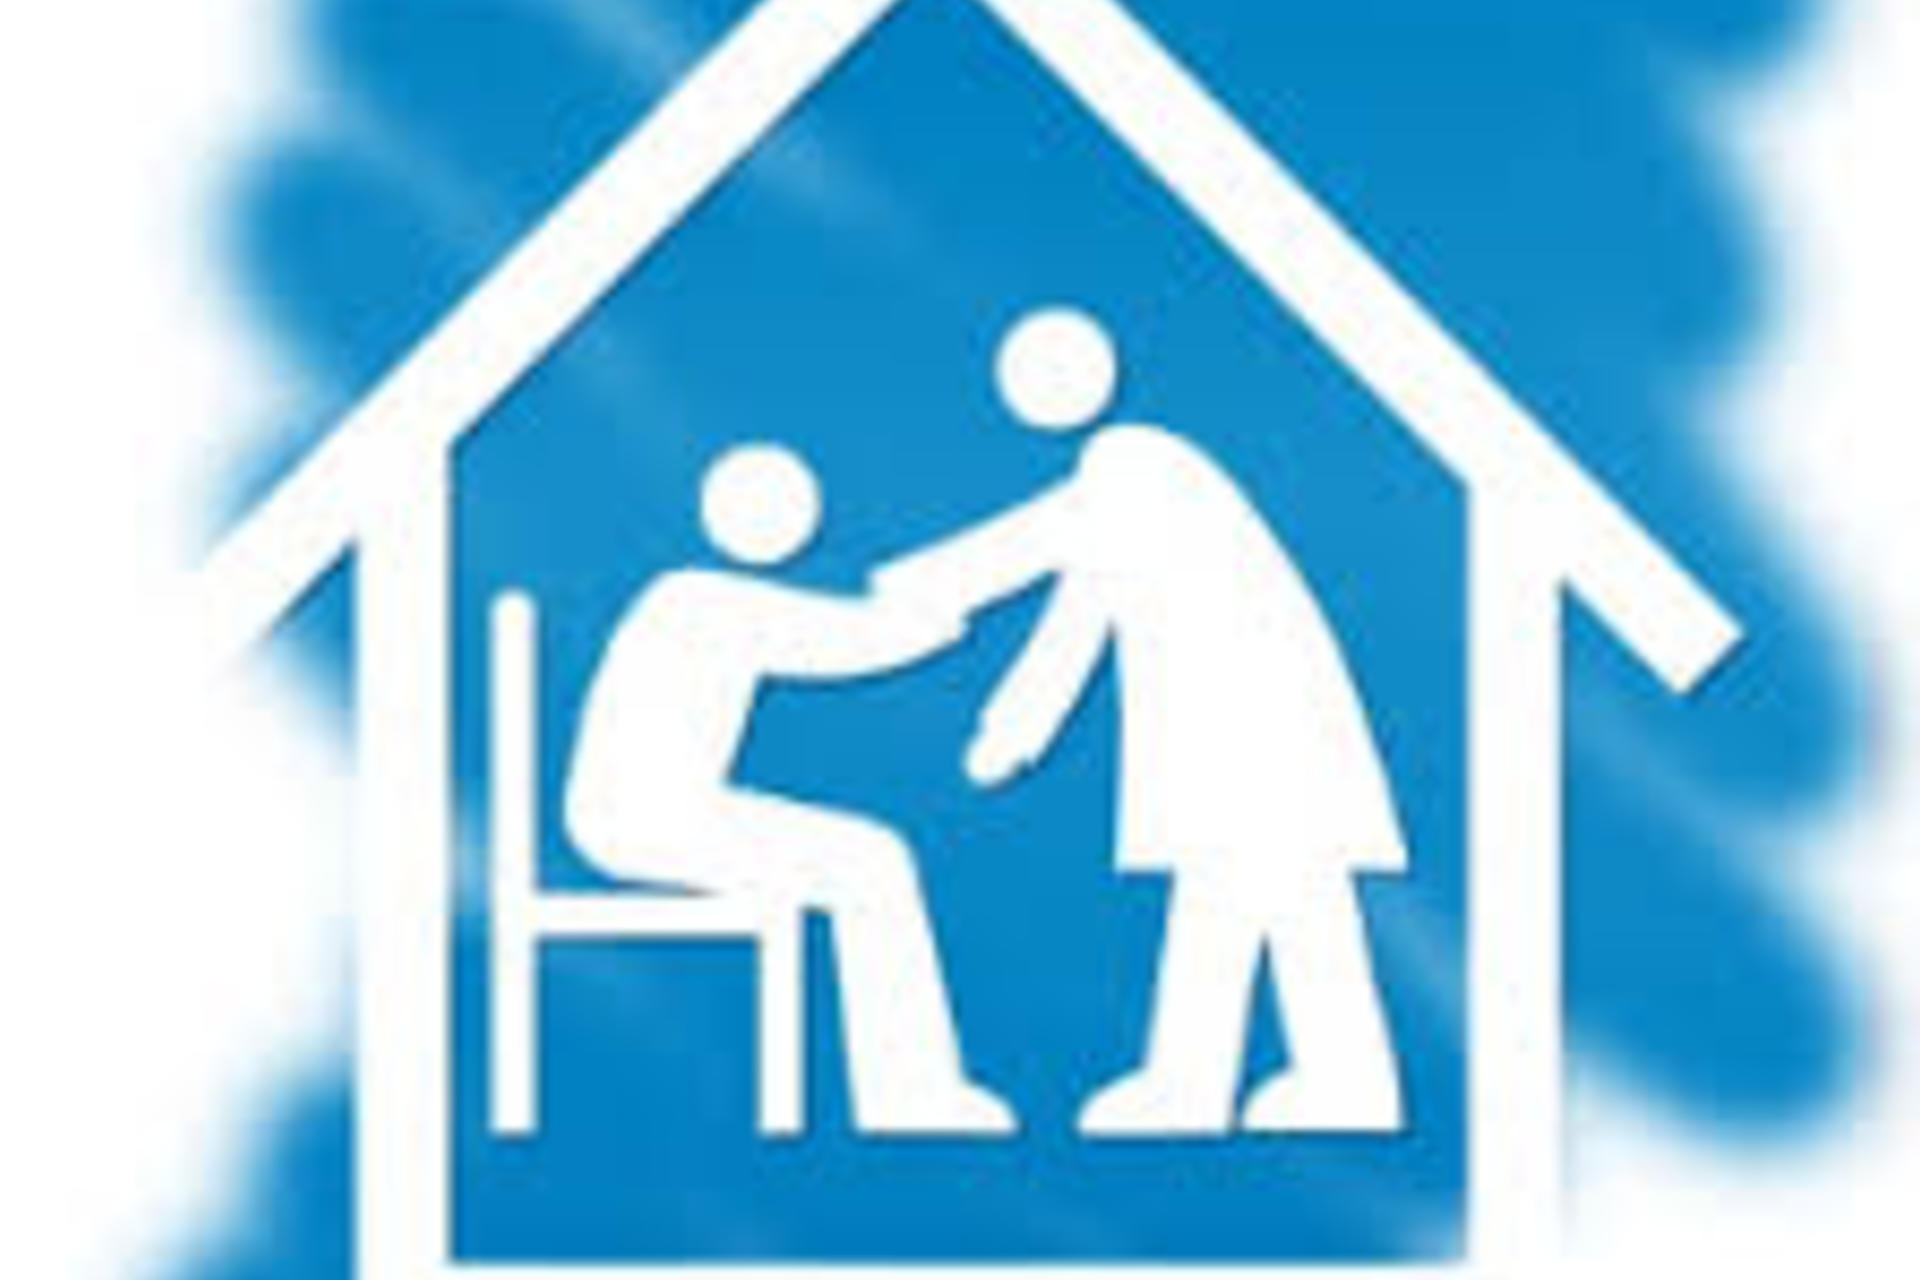 PLUS - Procedura accreditamento per i servizi di assistenza domiciliare e servizio pasti a domicilio